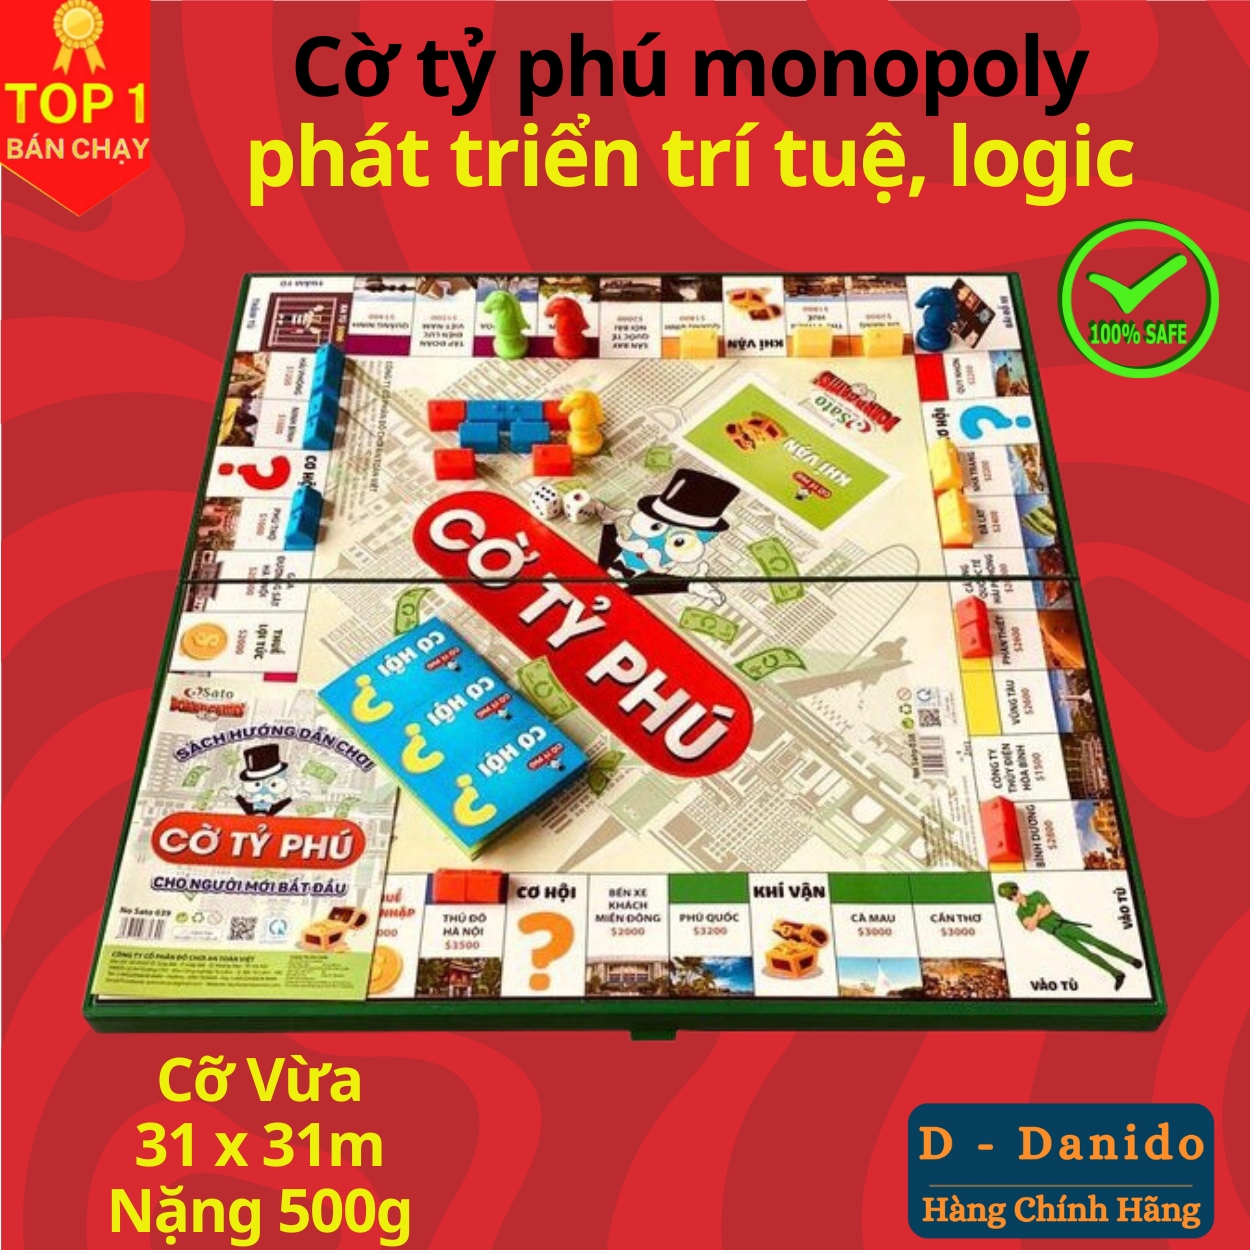 Cờ tỷ phú Monopoly cao cấp bản Việt Nam cải tiến - Boardgame cờ tỷ phú vui nhộn kích thước 31x31 và 42x42 - Hàng chính hãng D Danido 